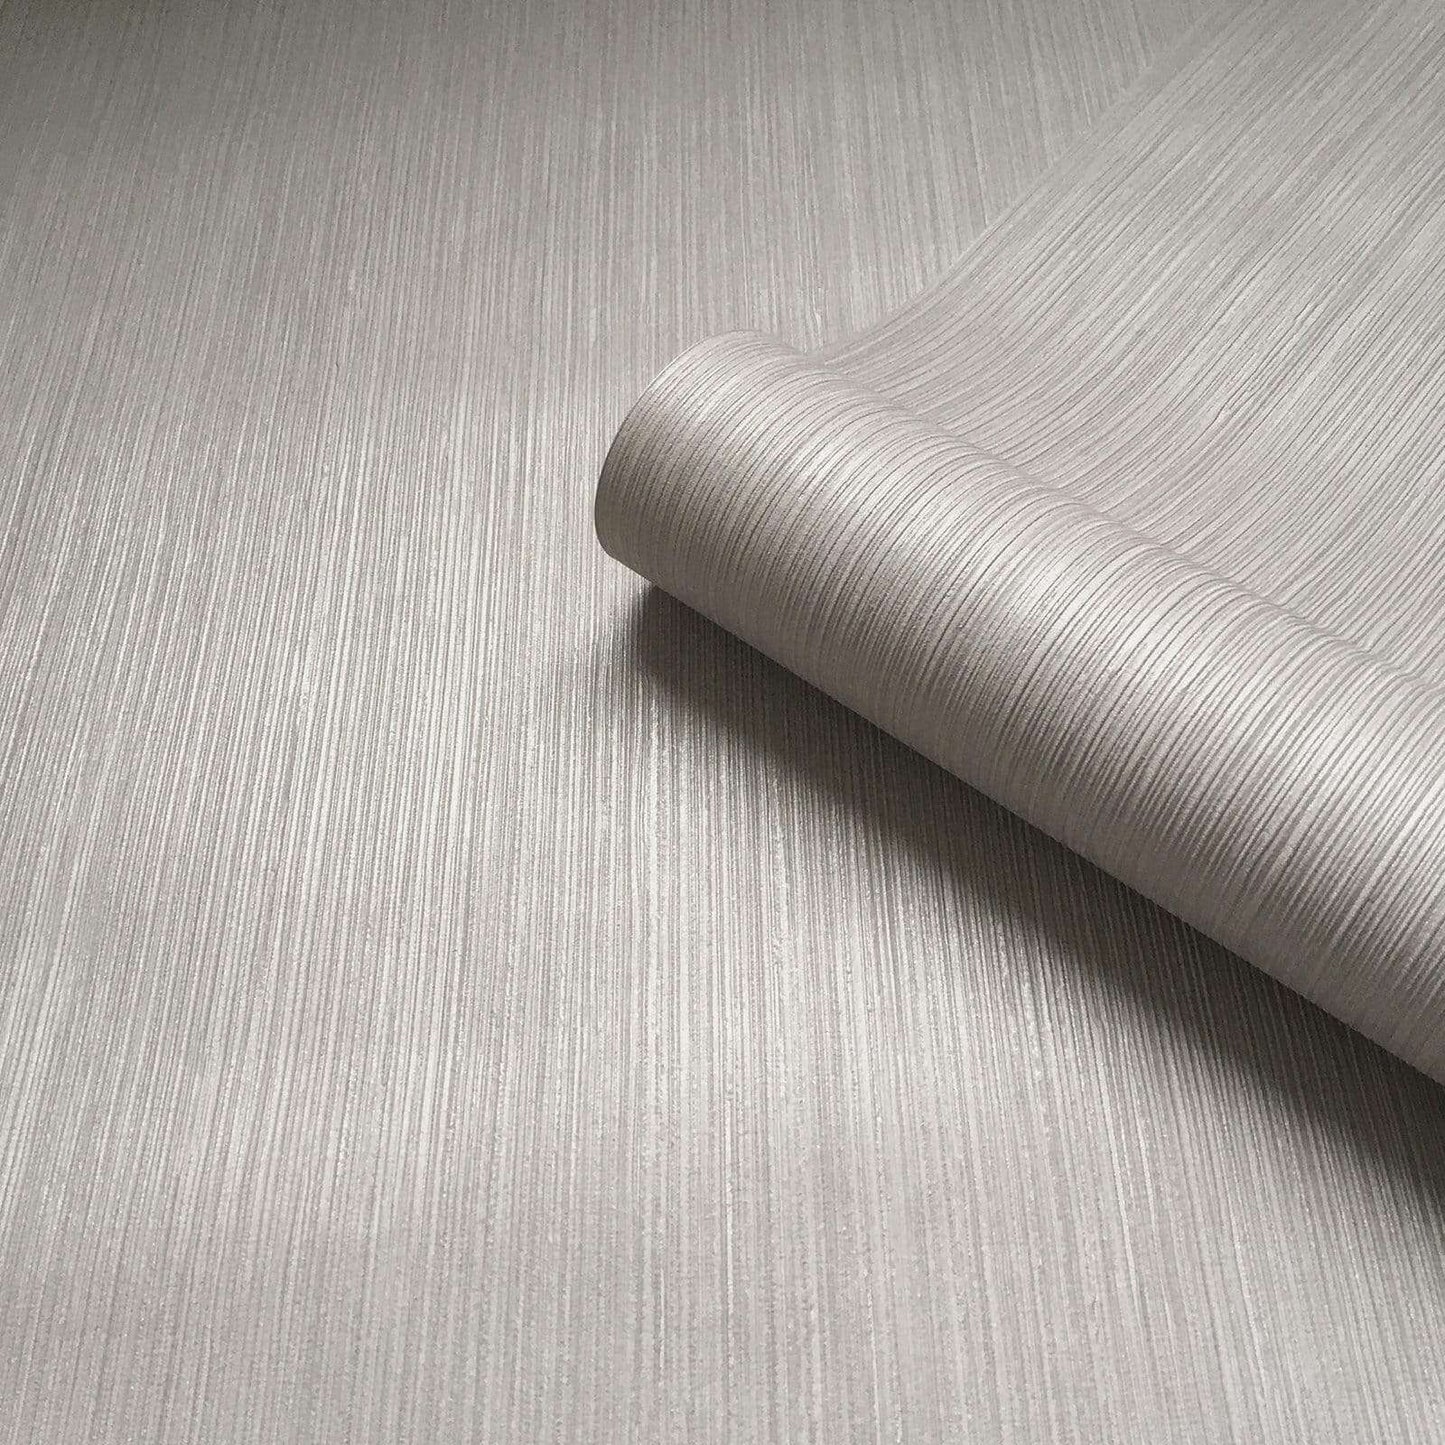 Wallpaper  -  Belgravia Amara Silver Texture Wallpaper - 7361  -  50154704